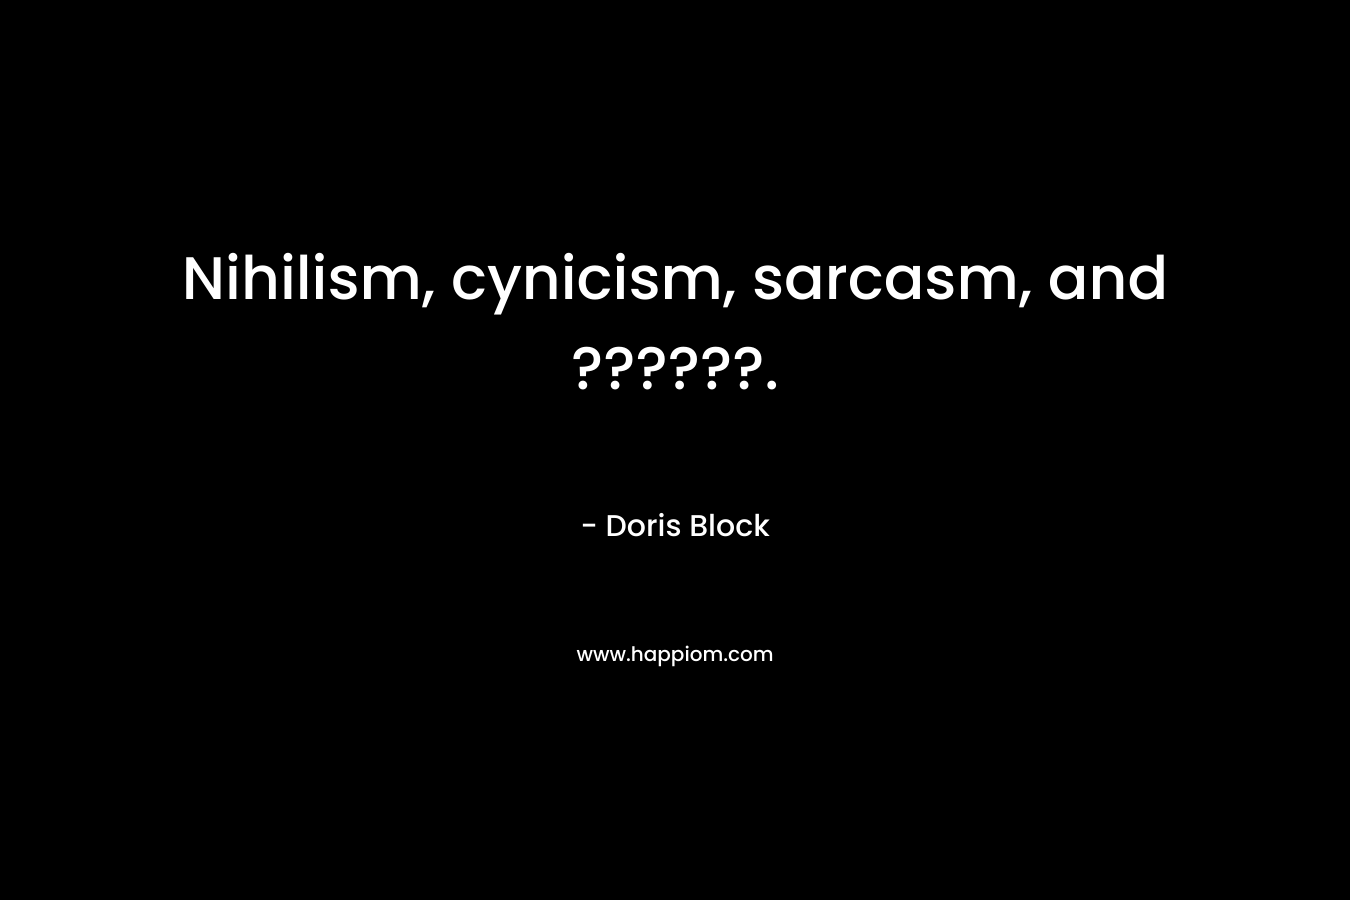 Nihilism, cynicism, sarcasm, and ??????. – Doris Block